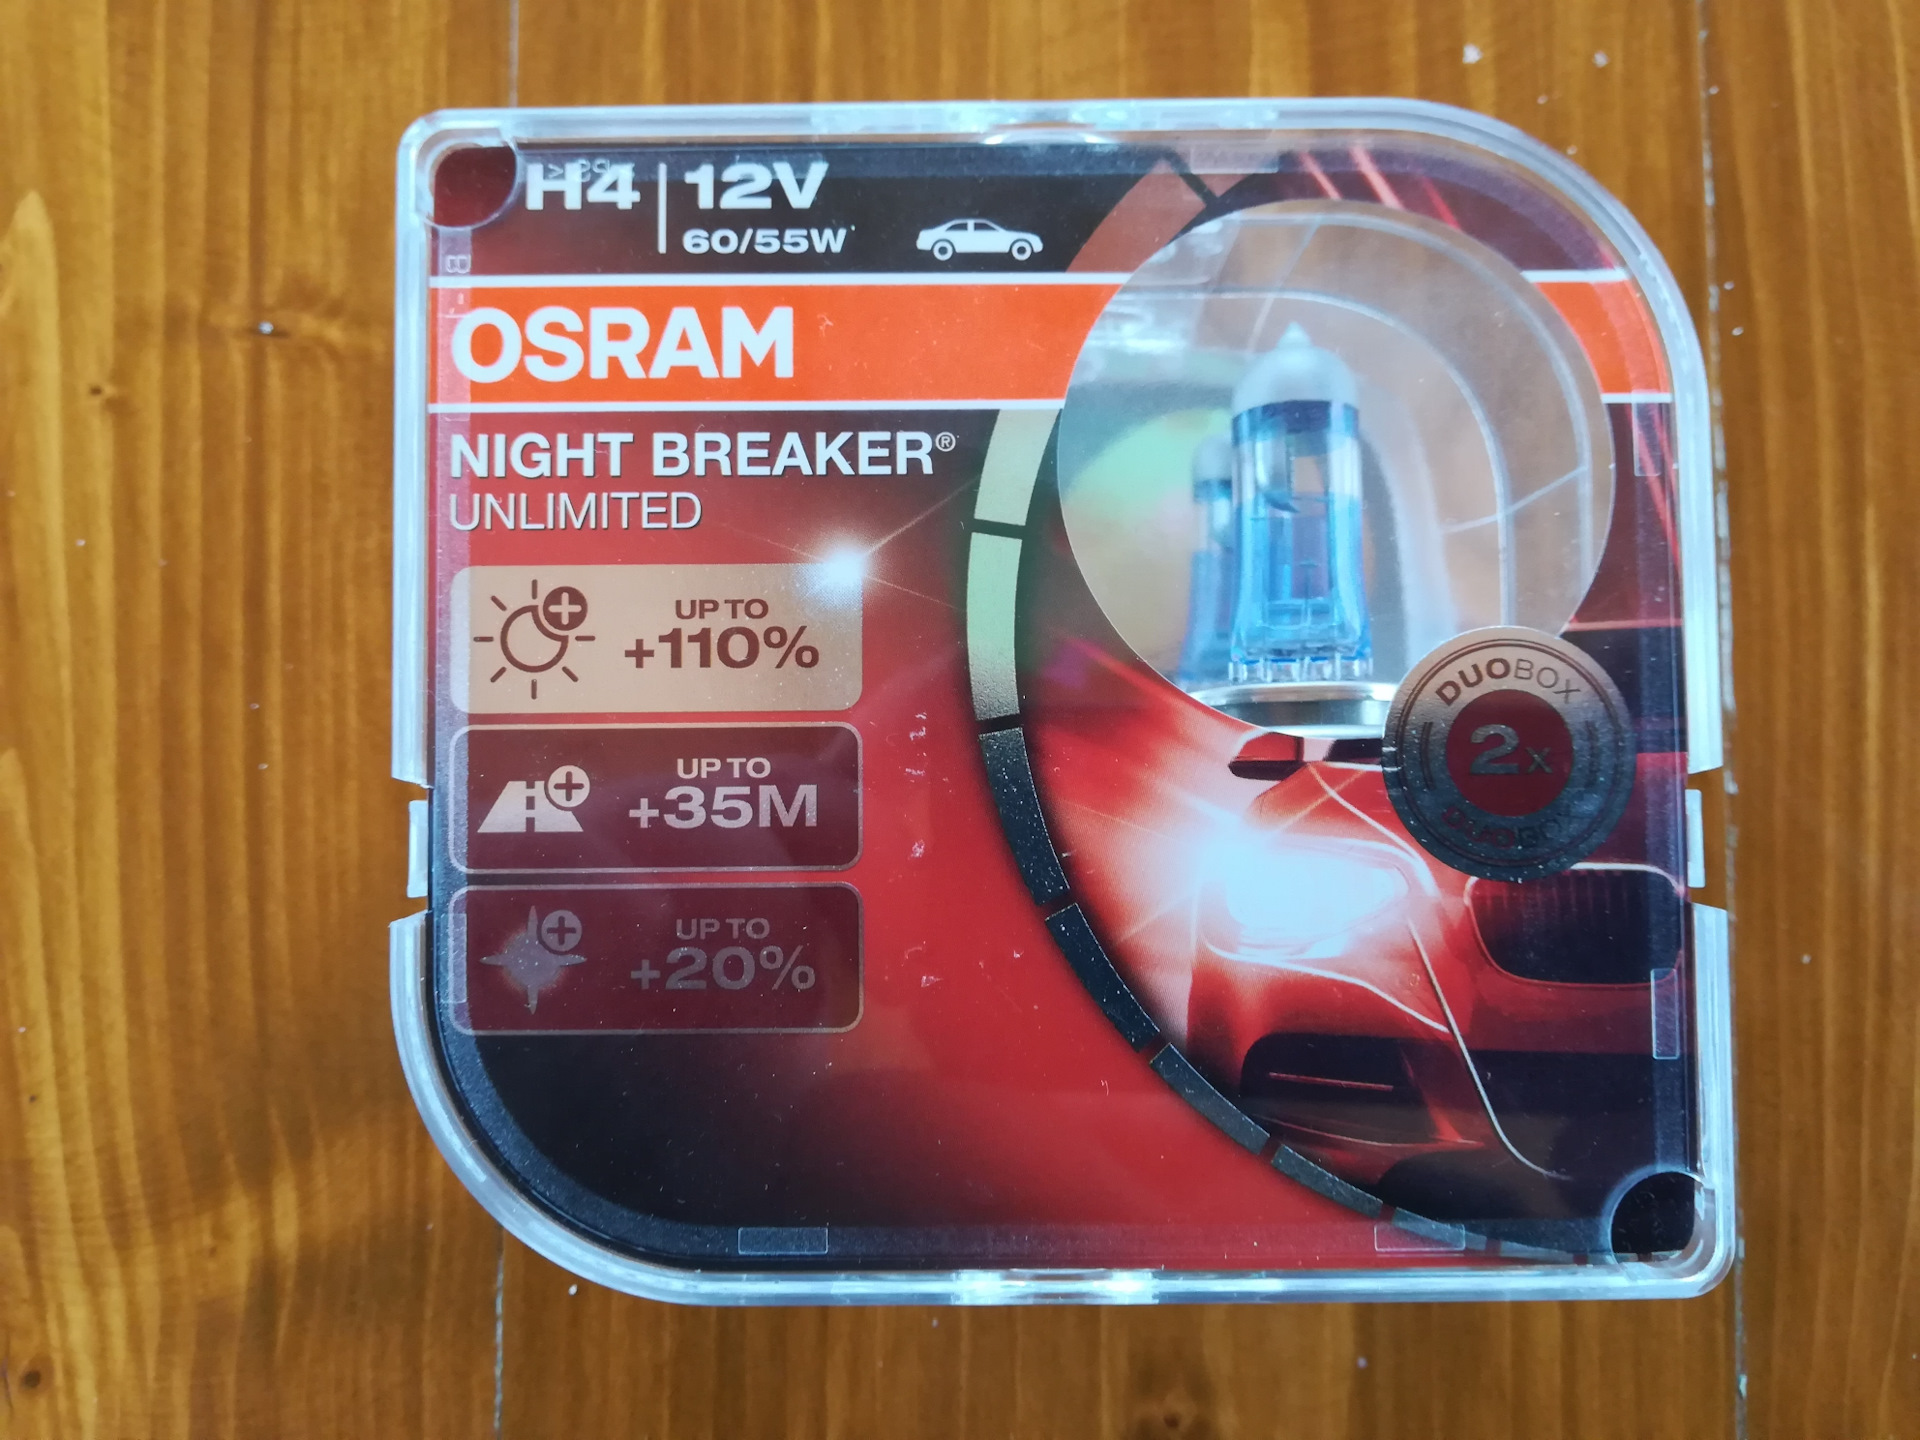 H9 Osram Night Breaker. 2 1 SRAM 1412v 60/55w (SRAM +1109 35л Night Breaker. Osram н4 60/55w +200% Night Breaker. Osram Night Breaker свет.